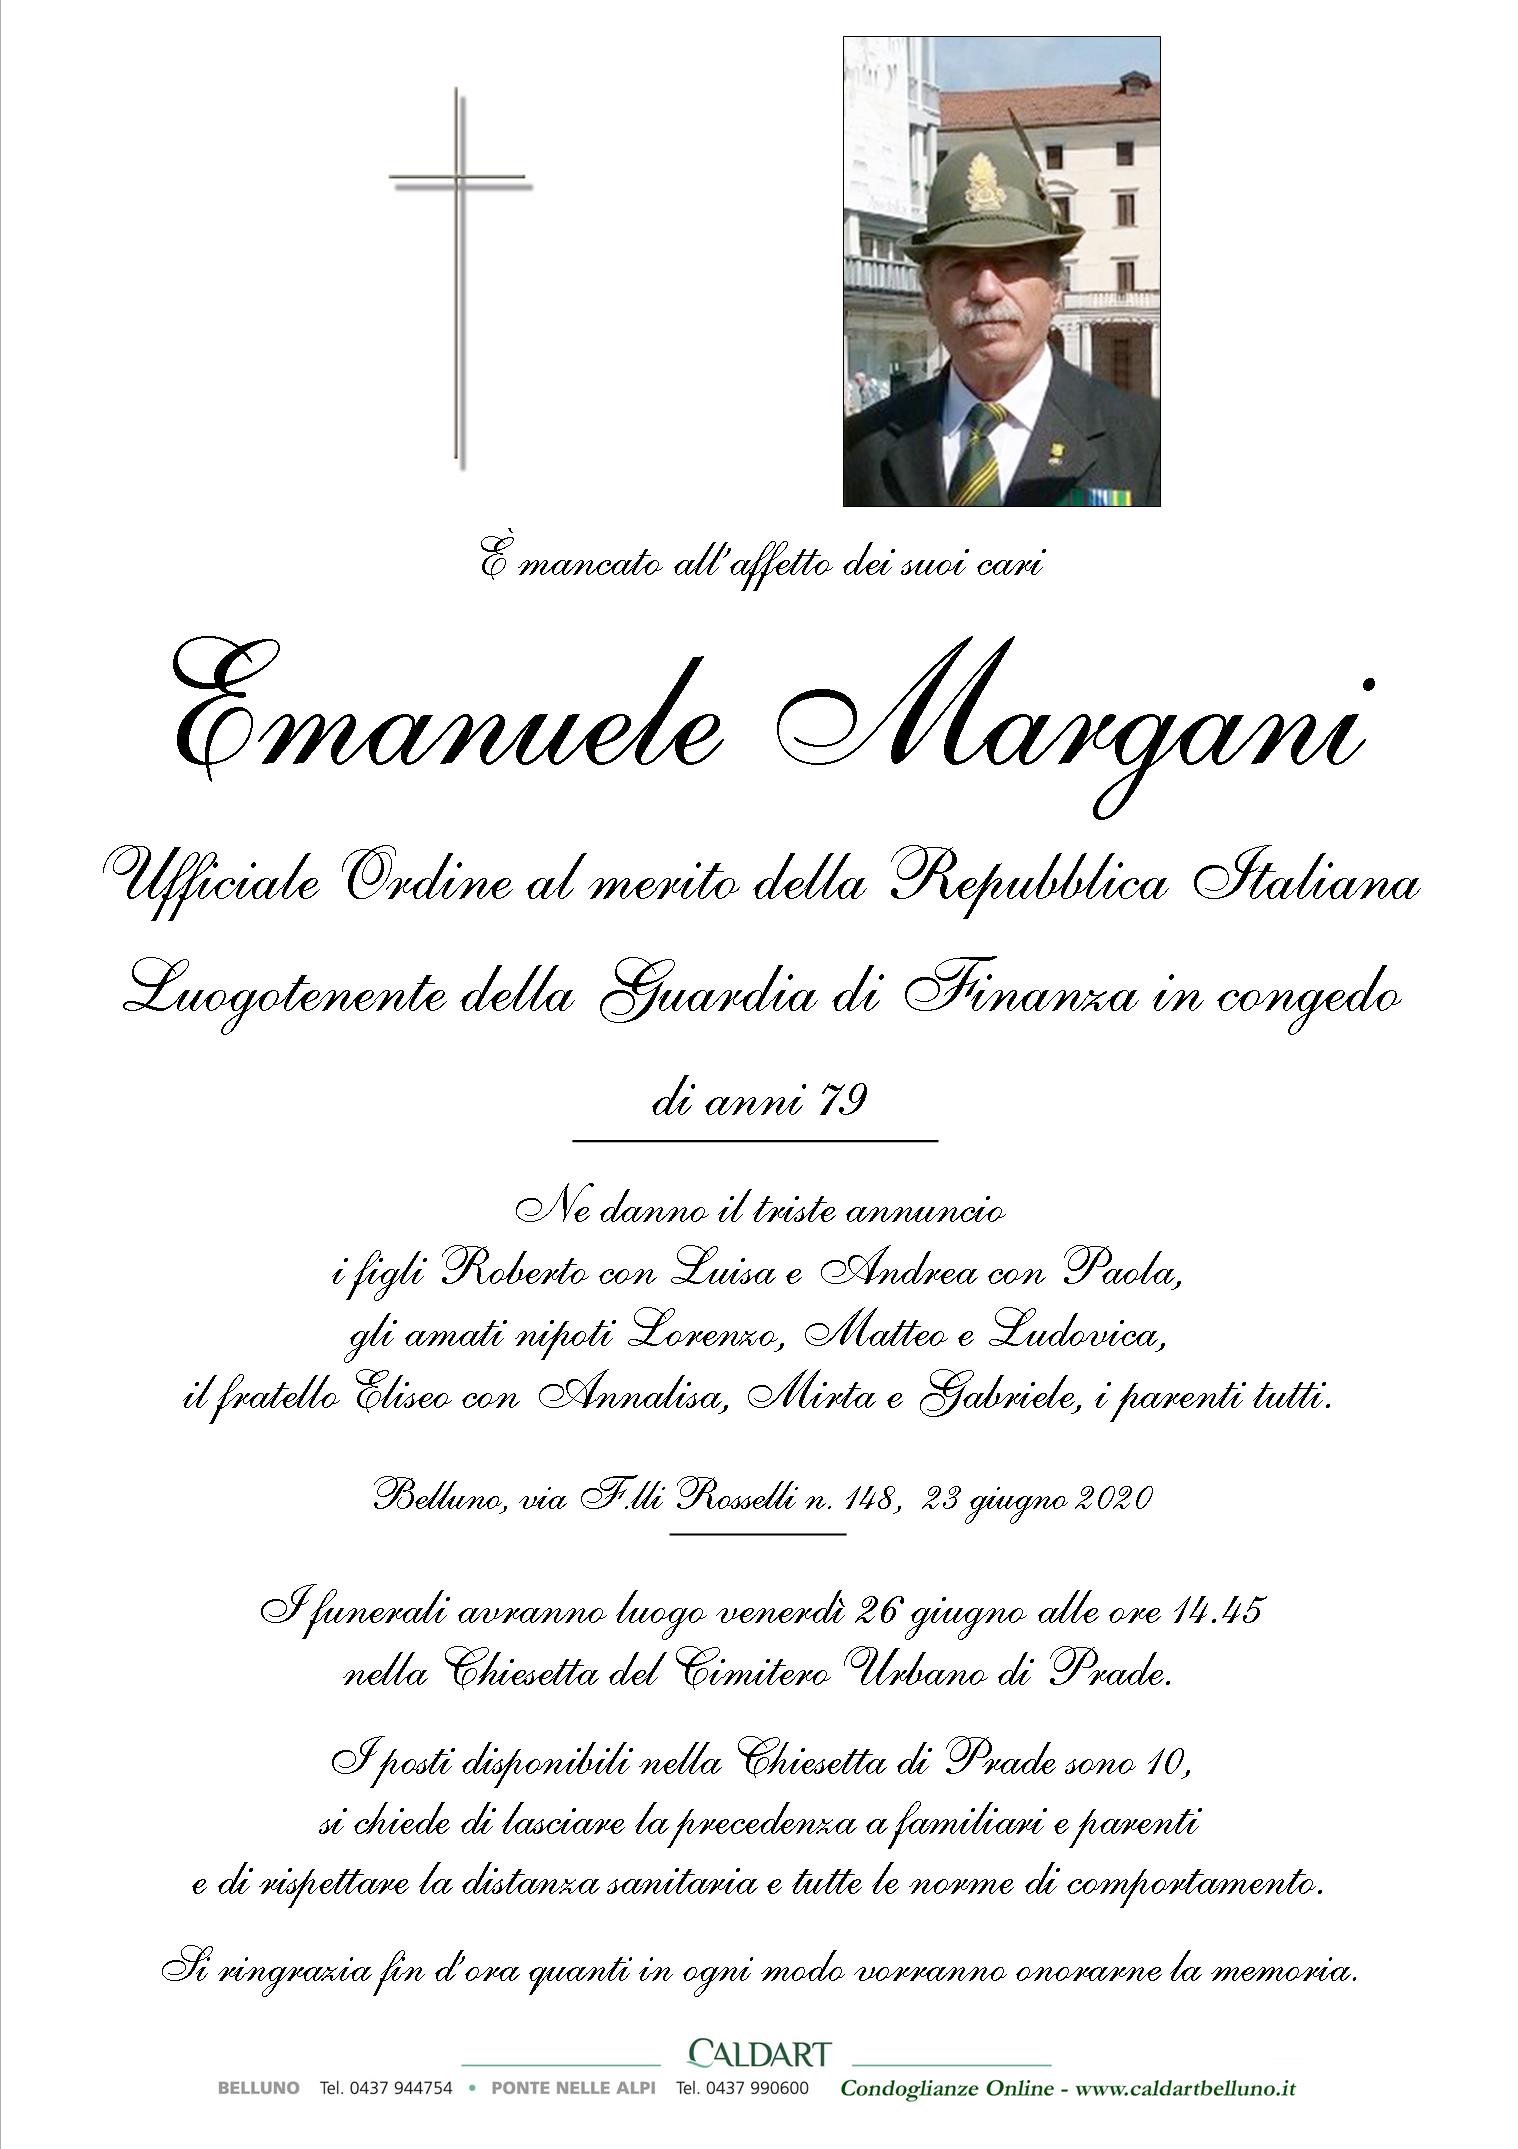 Margani Emanuele